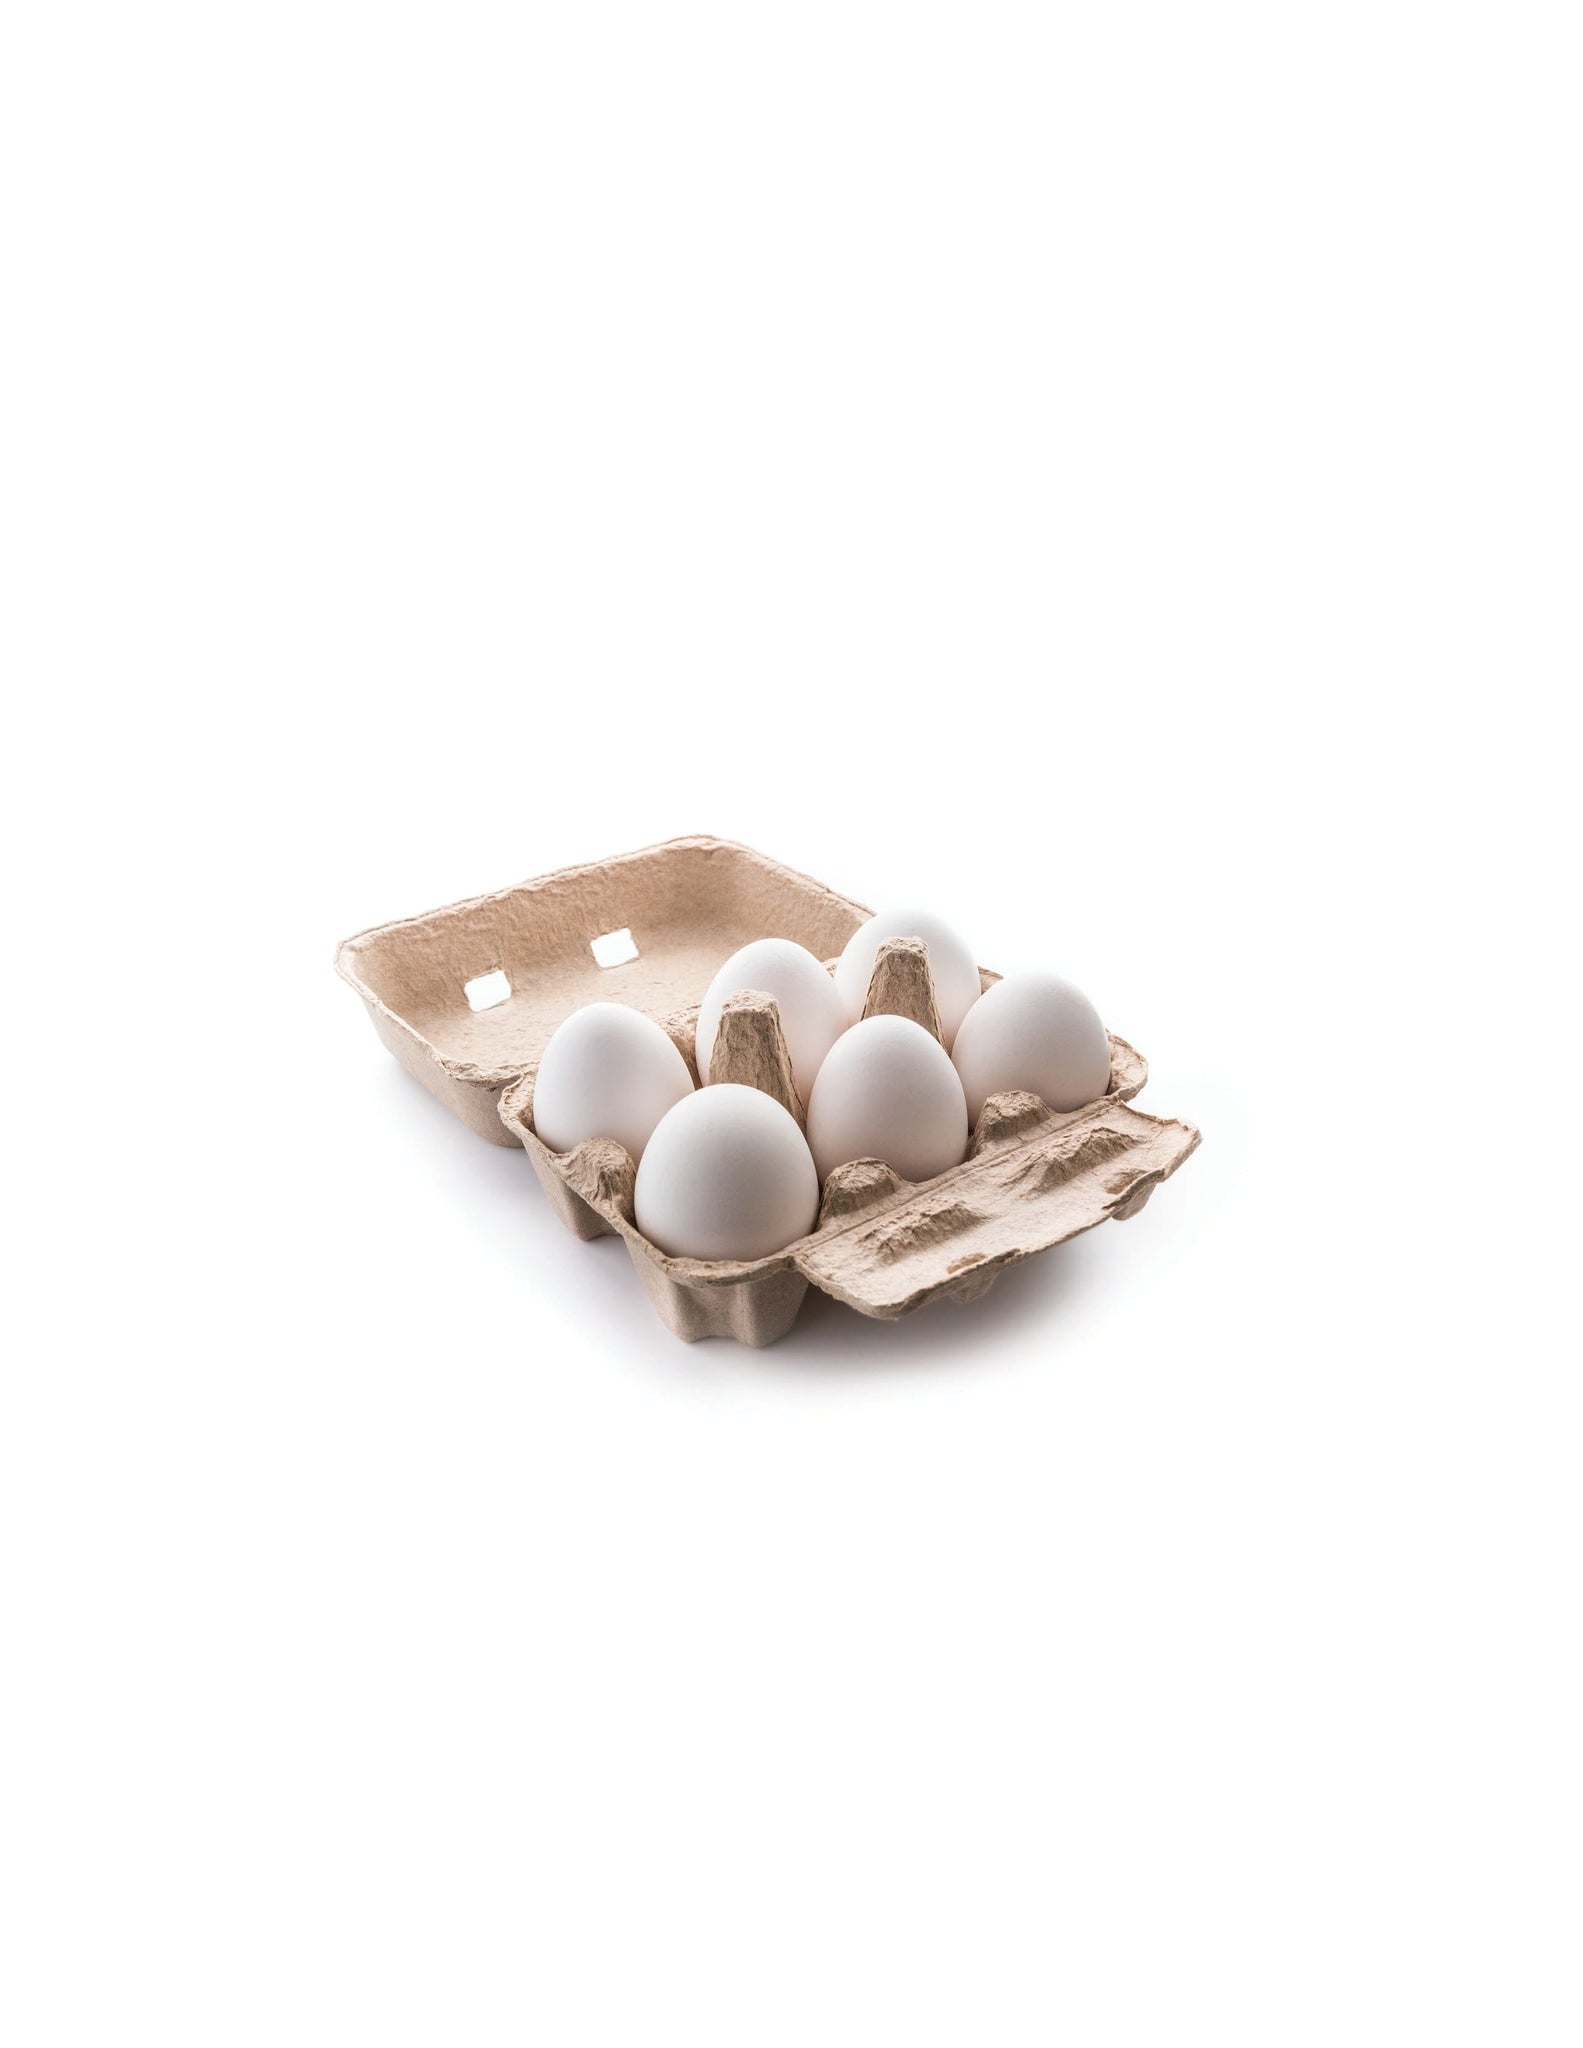 bel>Eggs, Half Dozen, 6